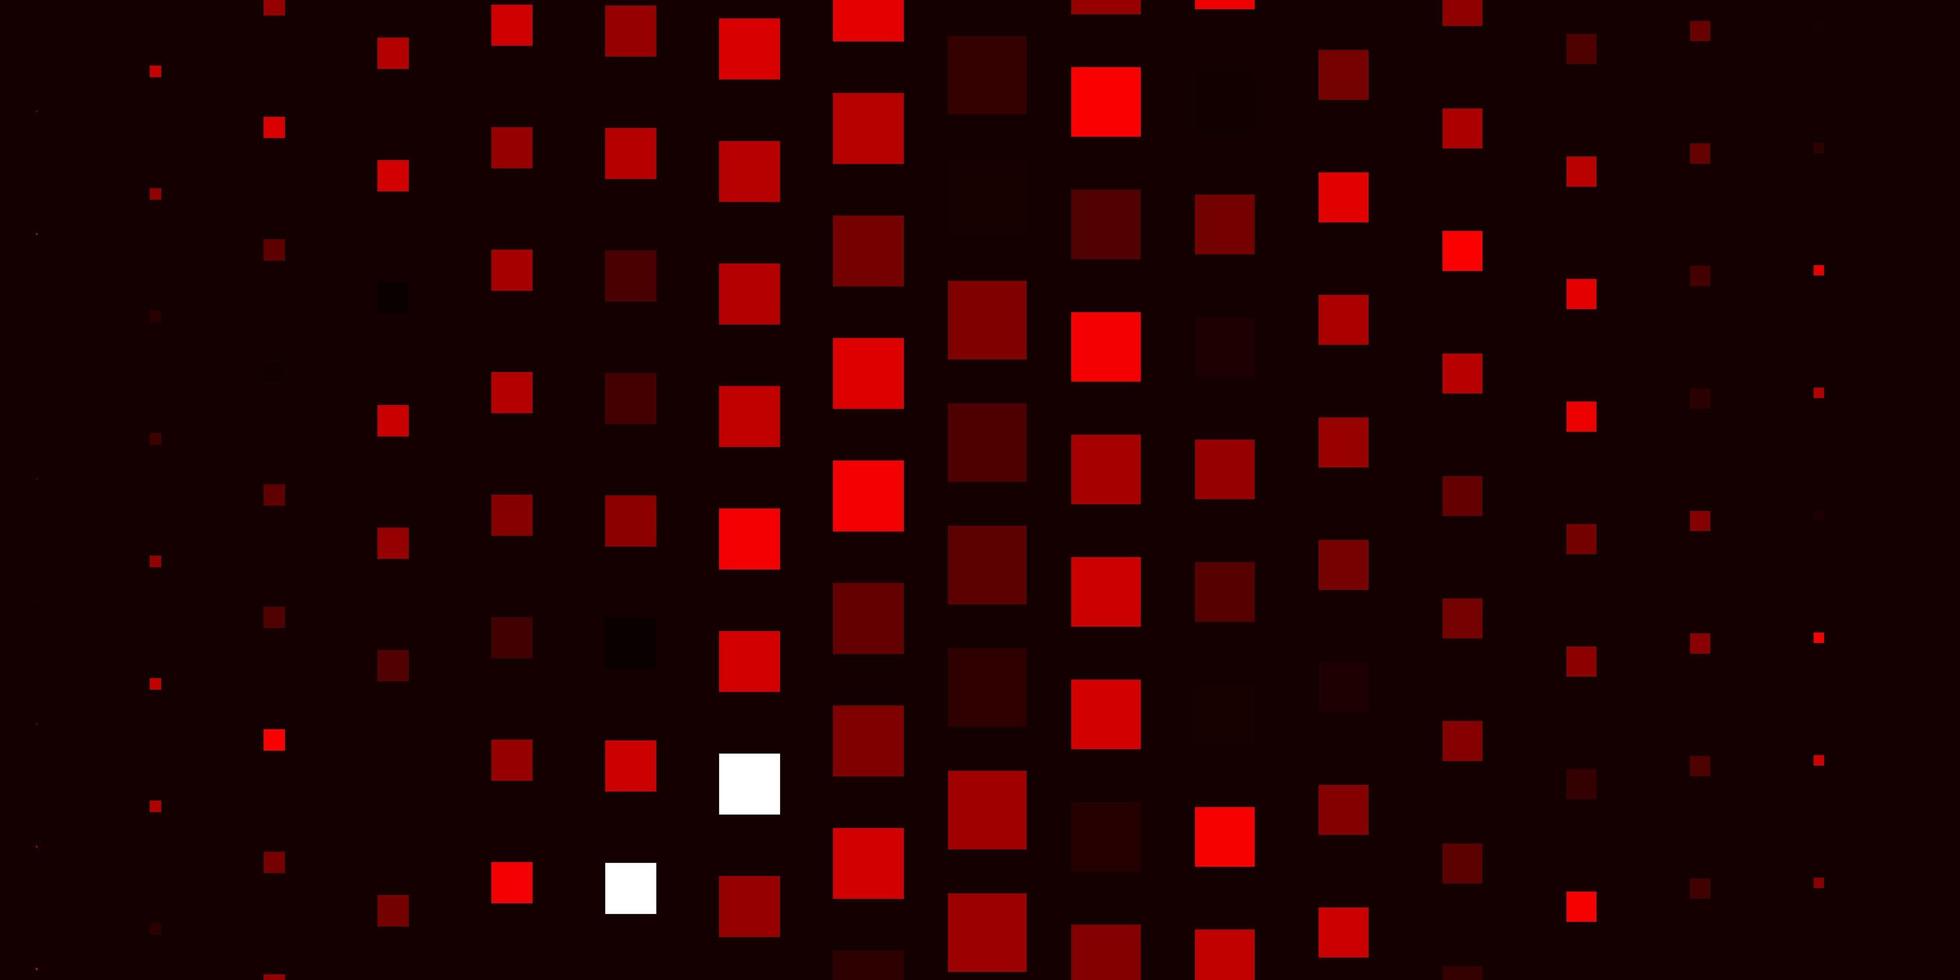 ljusröd, gul vektorbakgrund med rektanglar. vektor